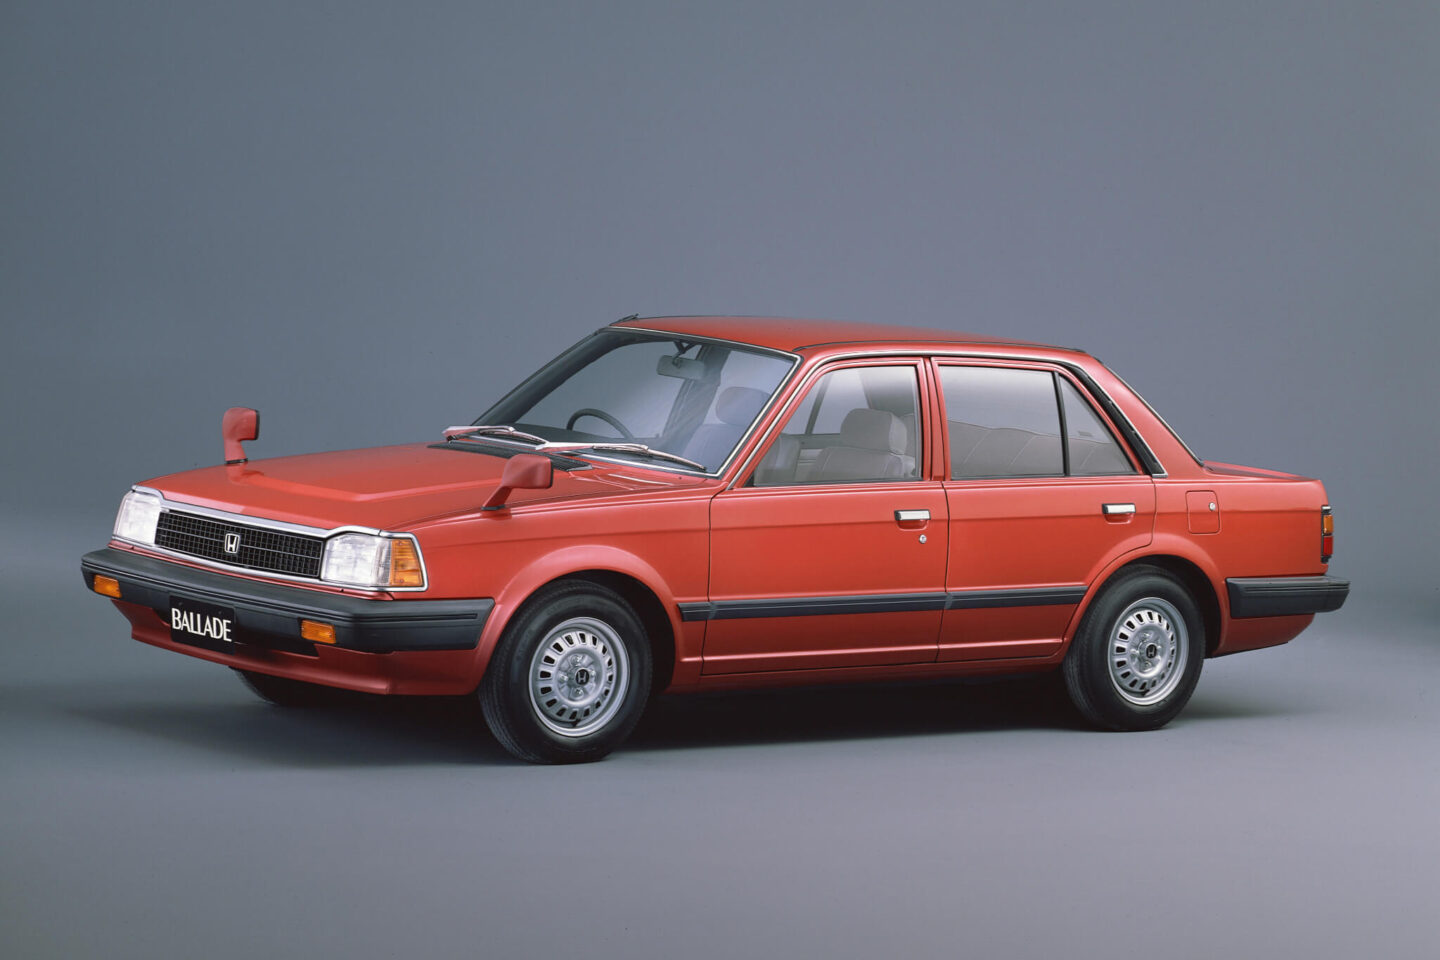 Honda Ballade de 1982